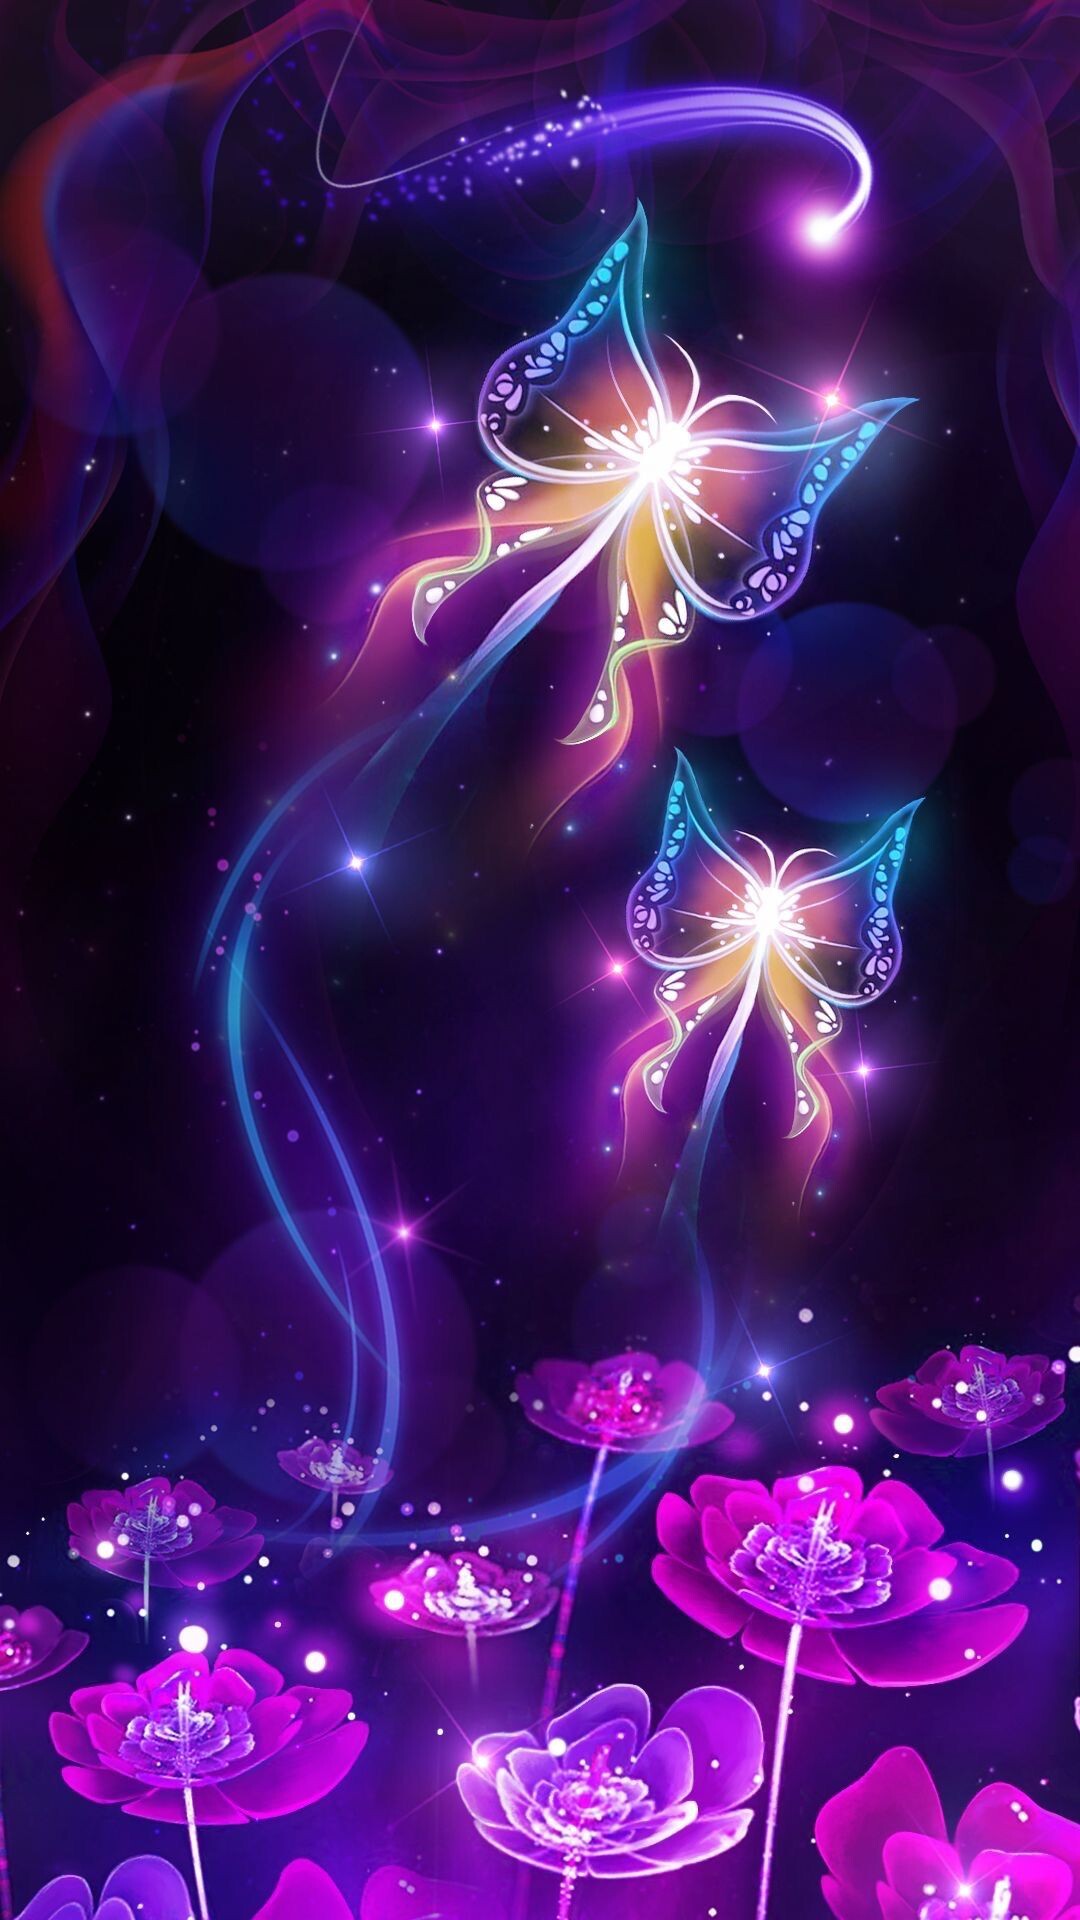 Glow in the Dark: Glowing pattern, Neon garden, Aesthetic lighting, Flowers, Butterfly. 1080x1920 Full HD Wallpaper.